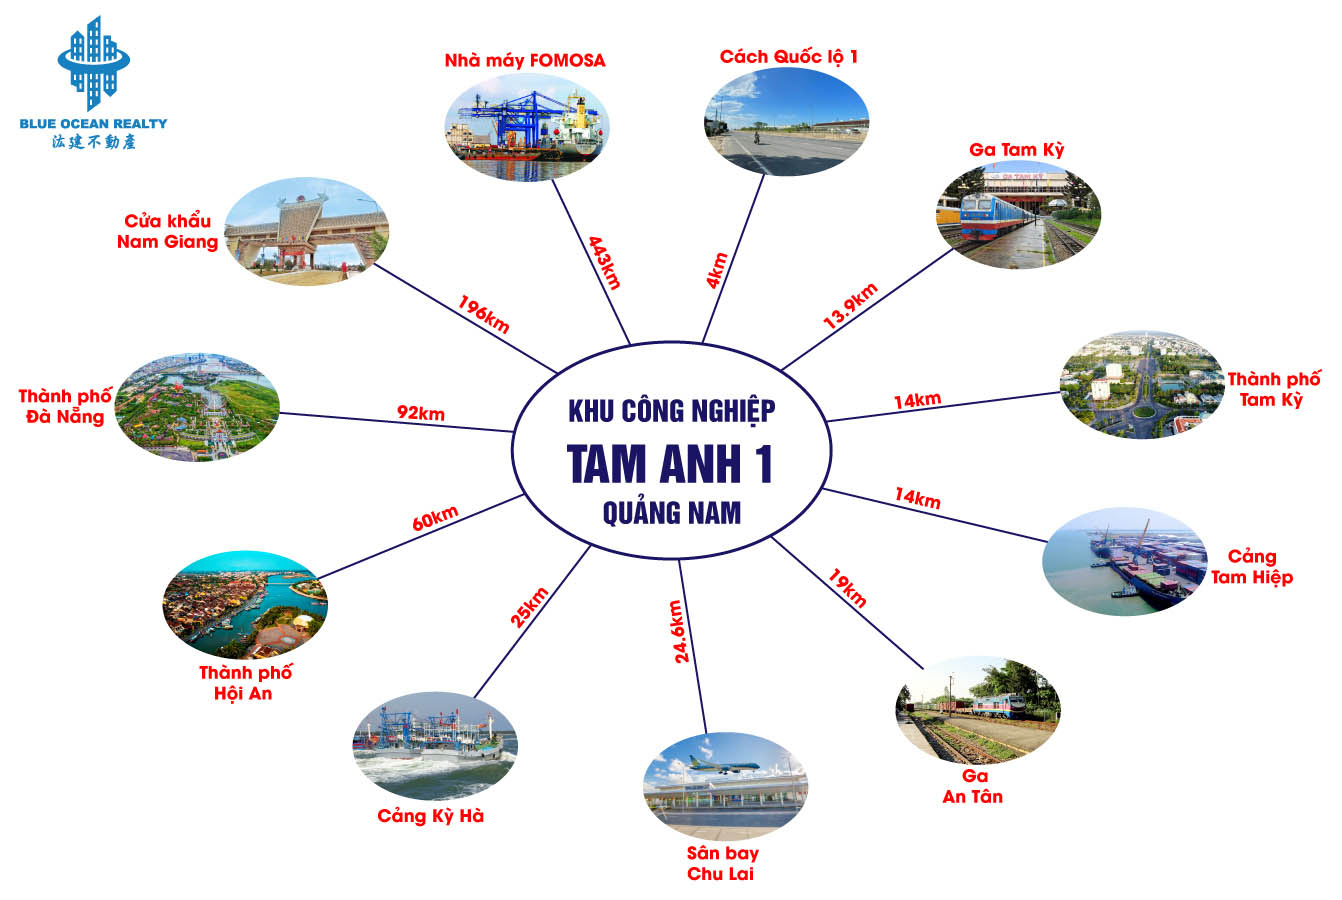 Khu công nghiệp Tam Anh 1 tỉnh Quảng Nam